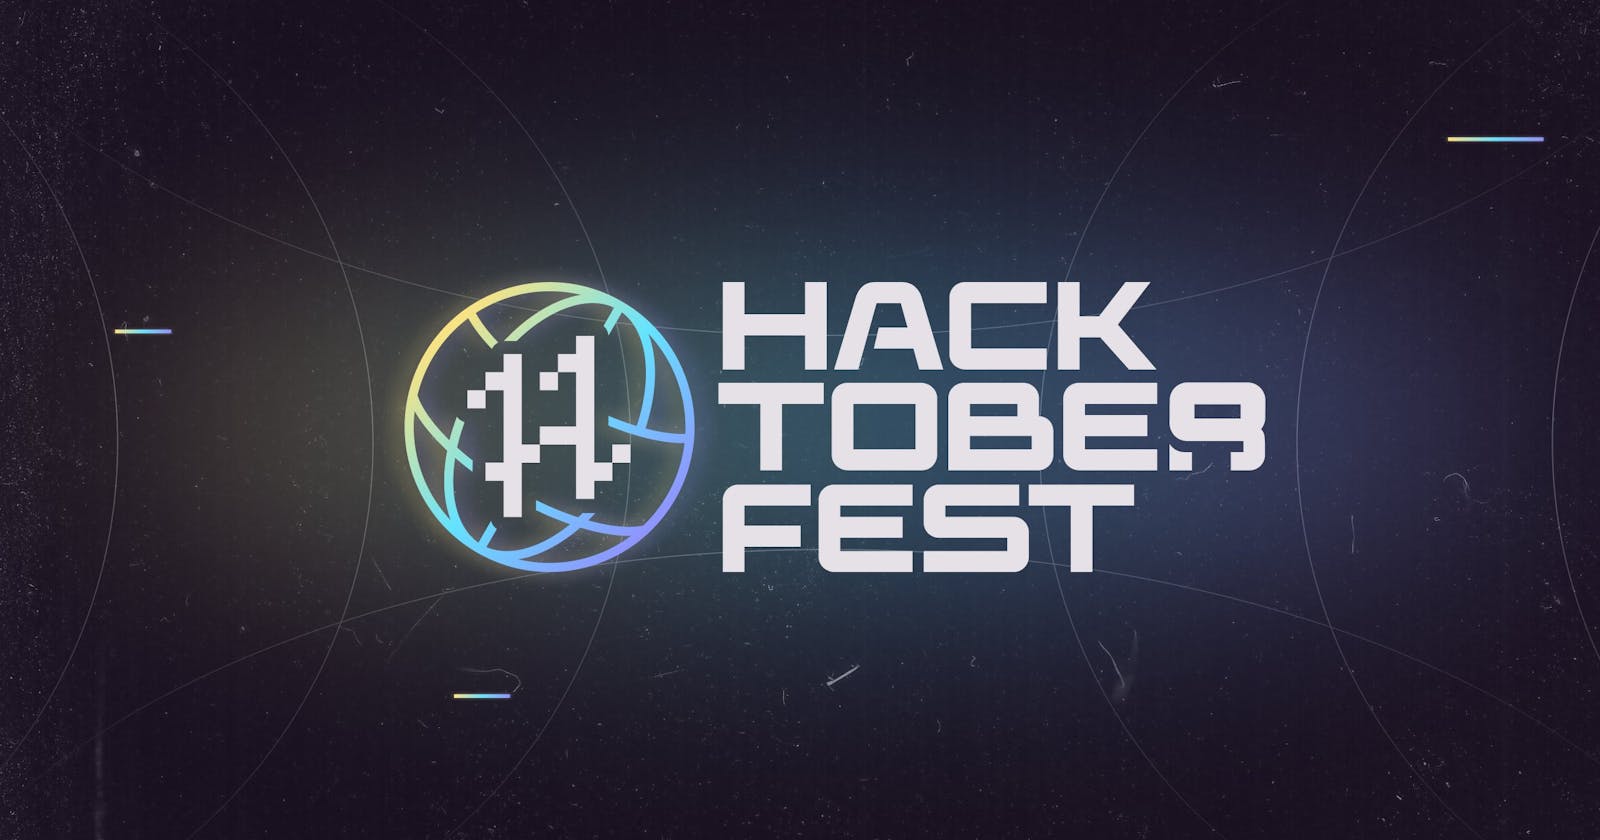 My Journey Through HacktoberFest 2022